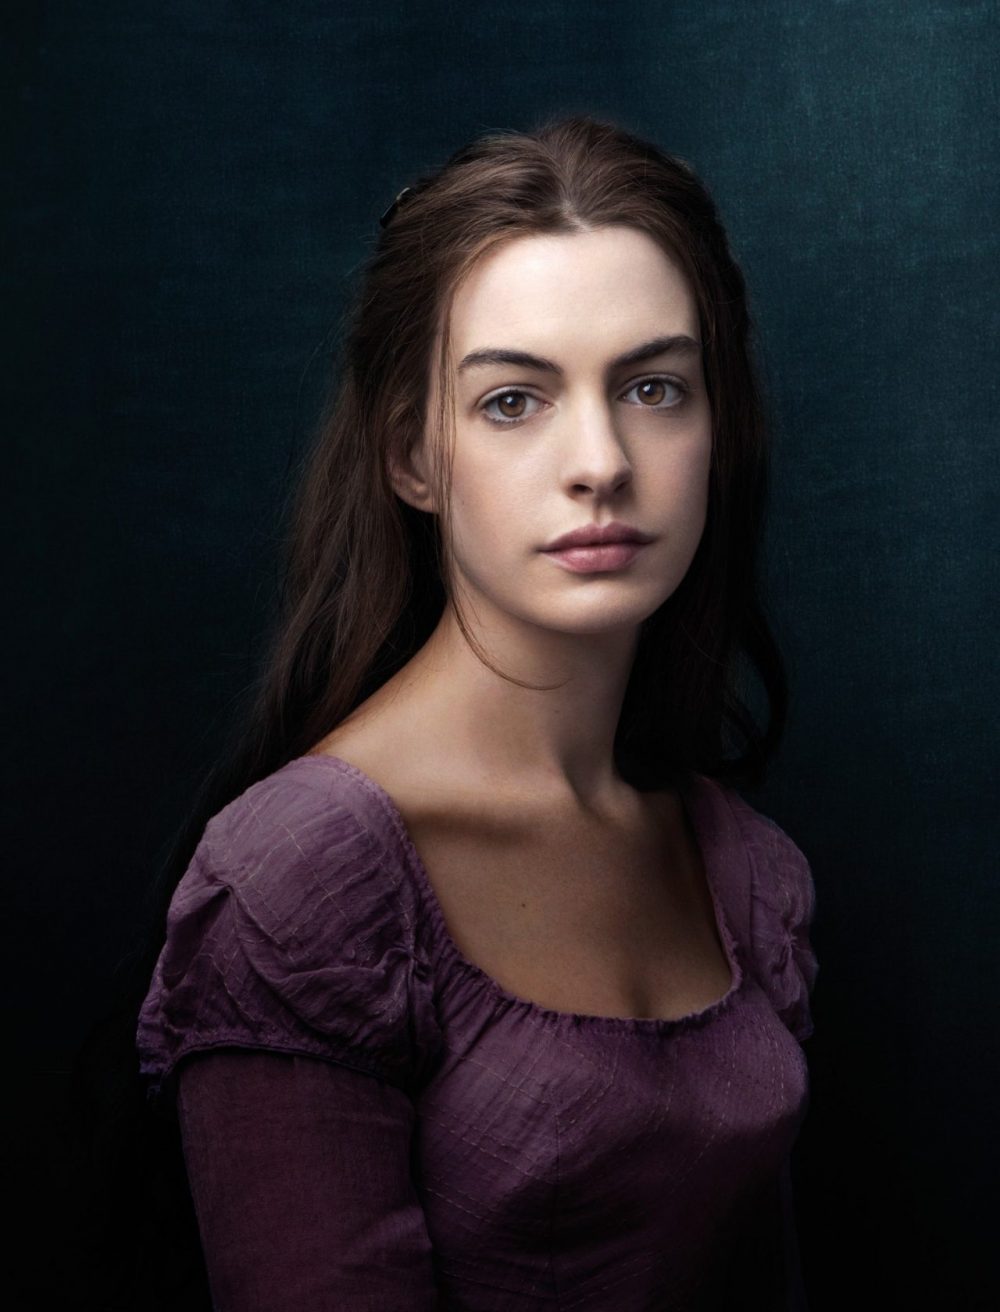 Anne ve dep ky la e1599407247337 - Anne Hathaway: Hoàn hảo từ Công chúa đến Người khốn khổ